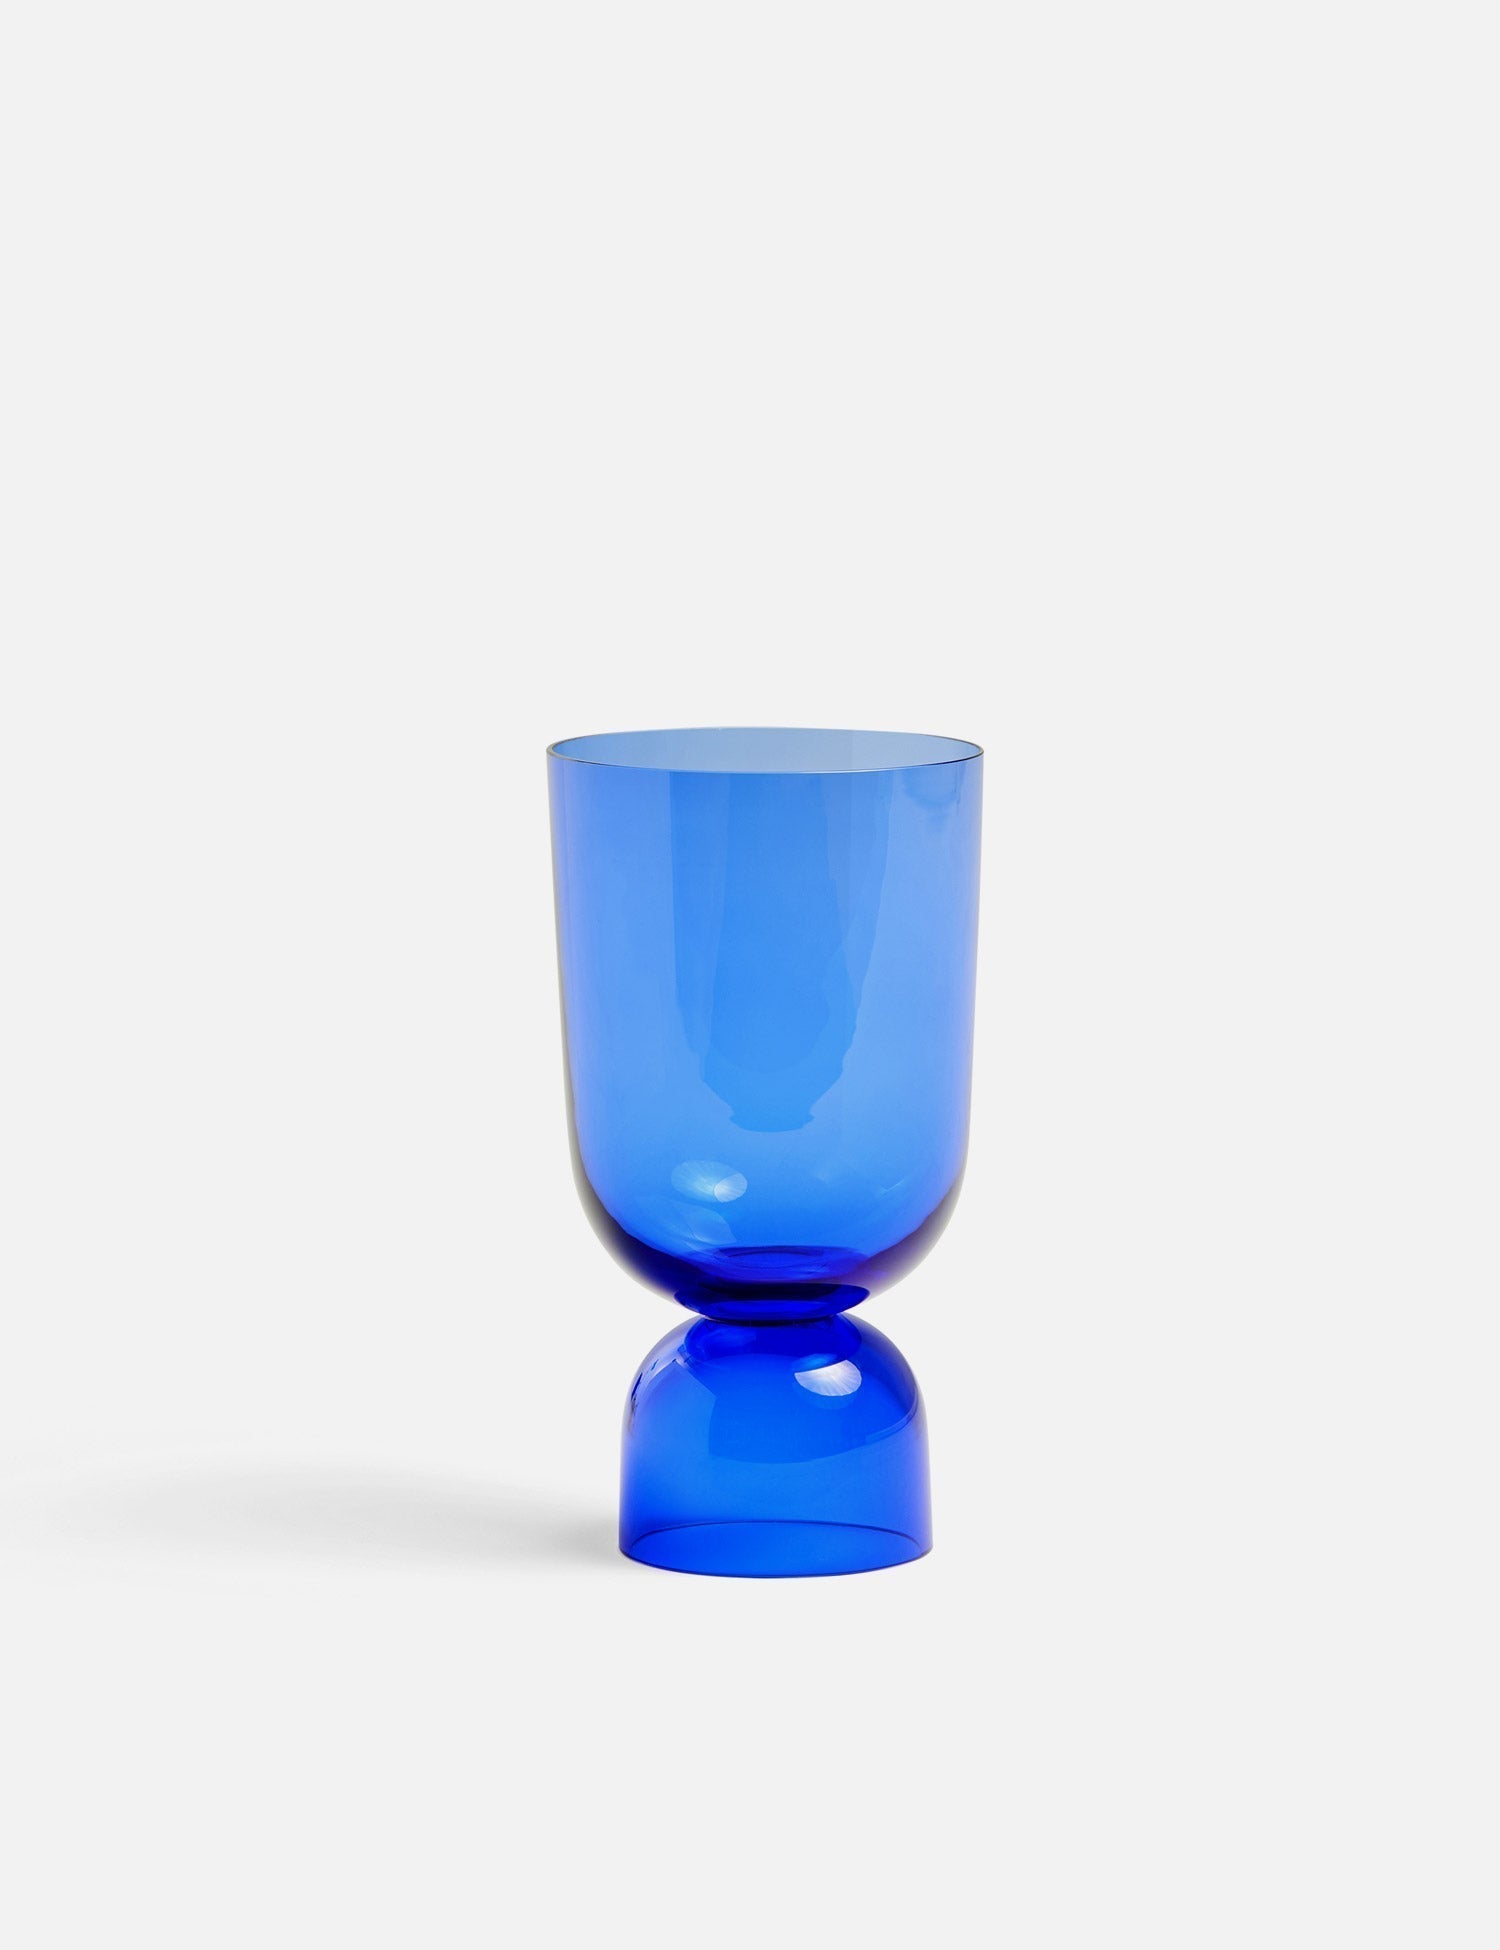 Bottoms Up Vase (Azure)